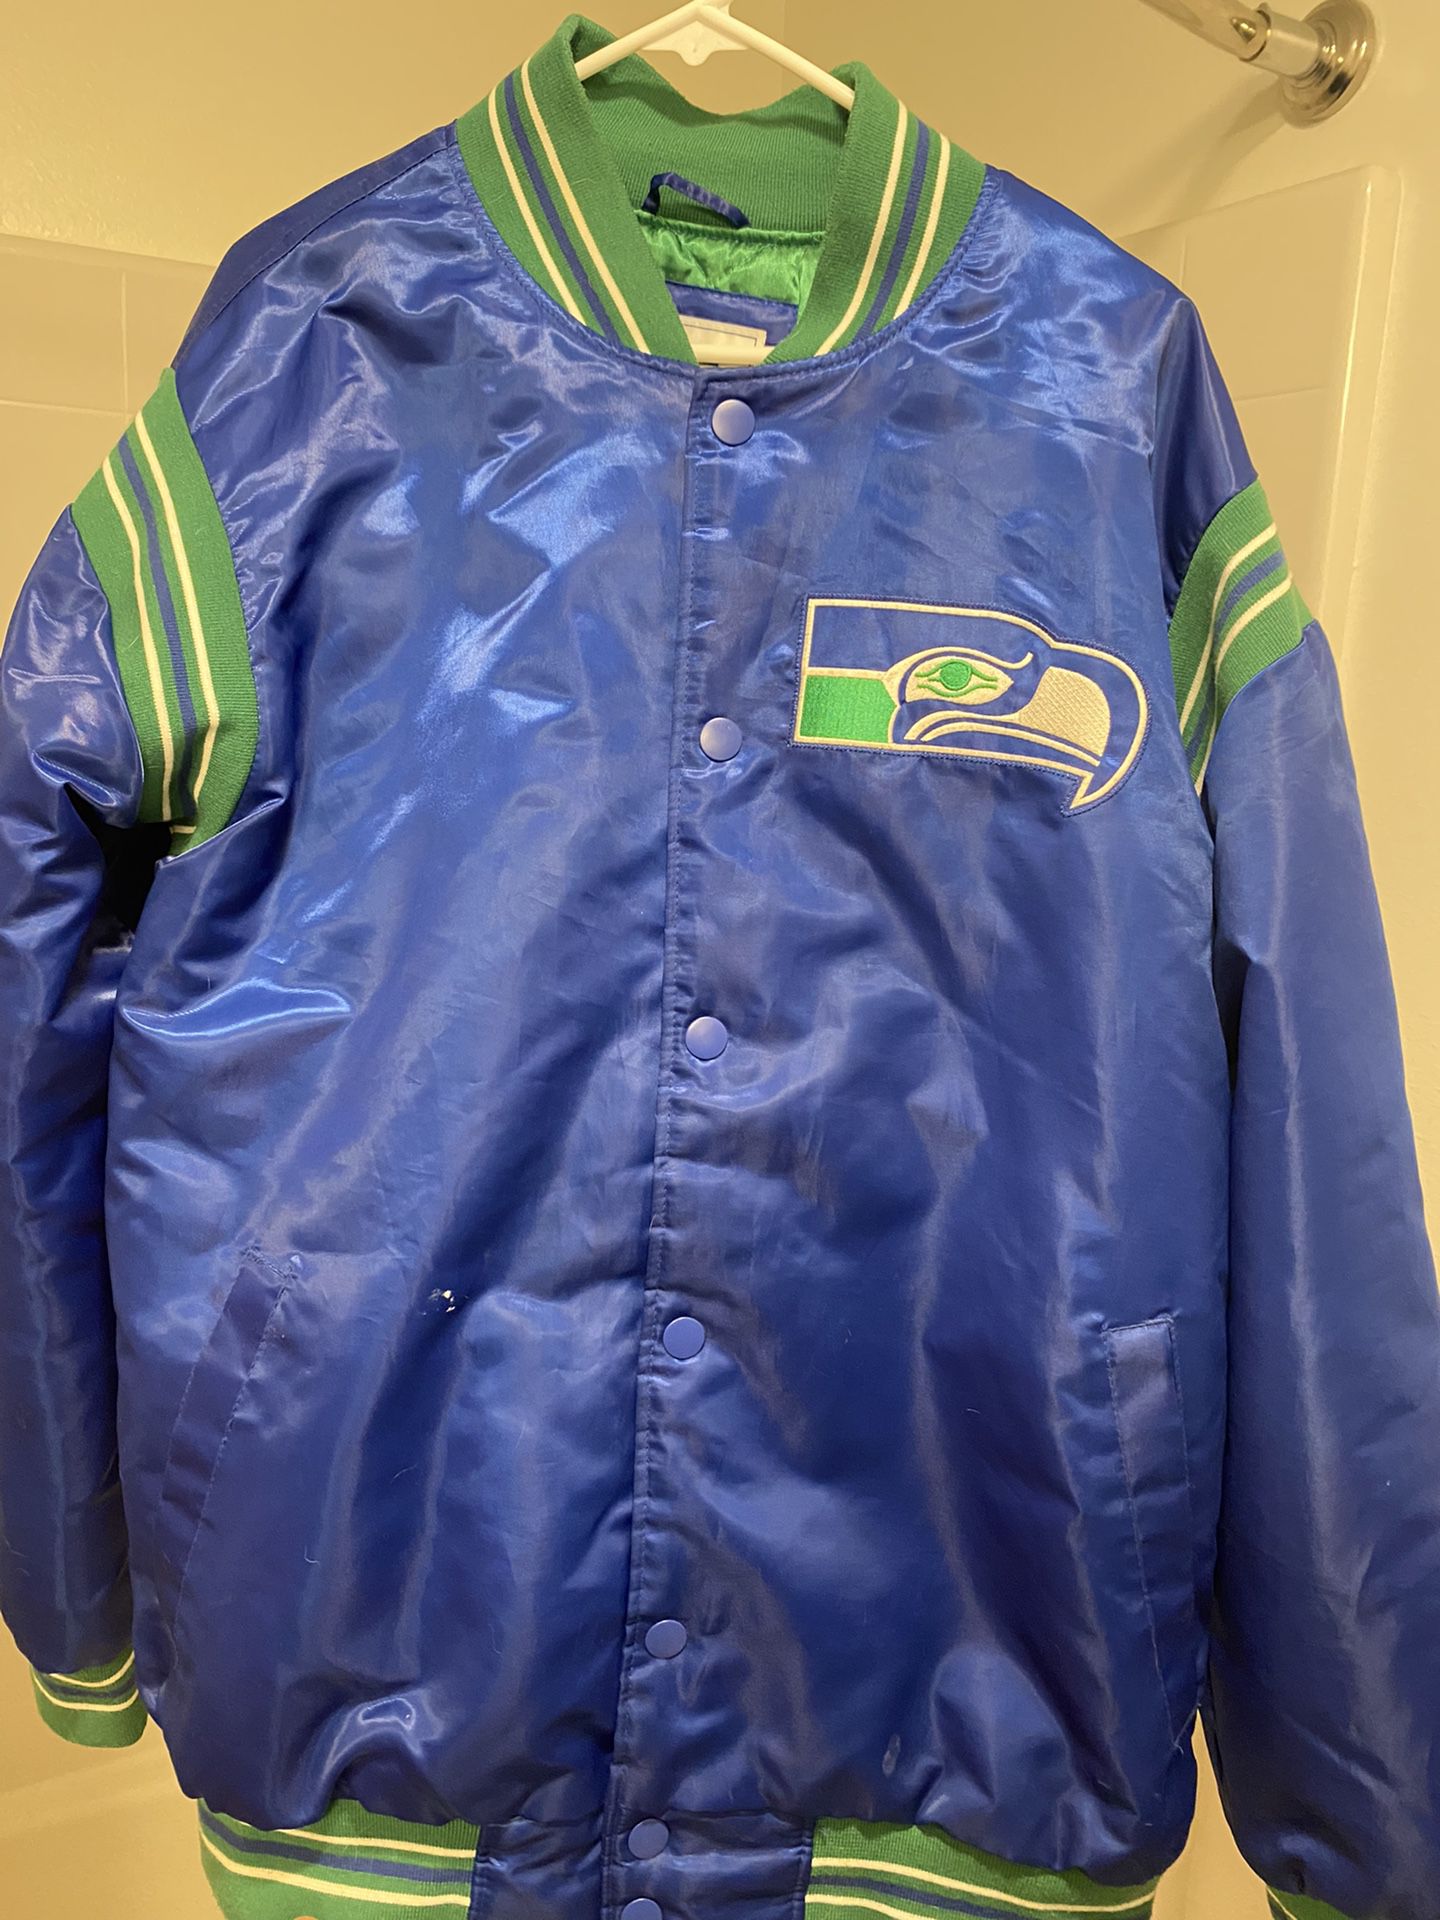 Seahawks Starter Jacket Large for Sale in Seattle, WA - OfferUp